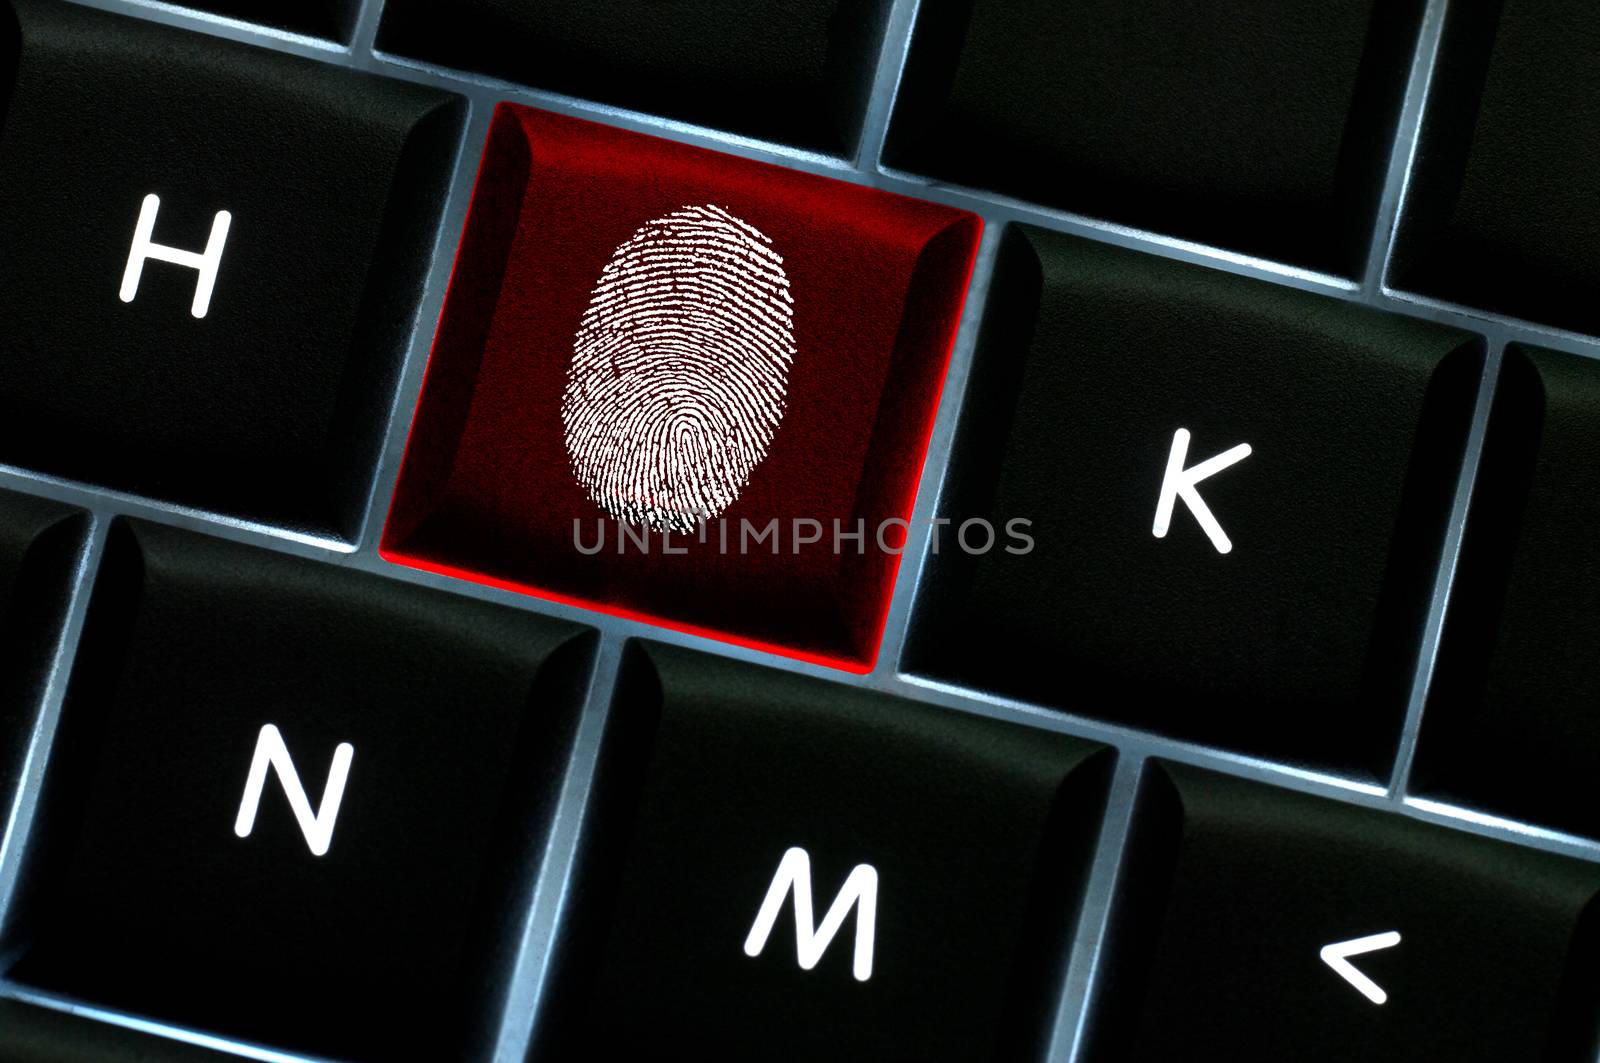 Online crime scene concept with the fingerprint left on a backlit keyboard